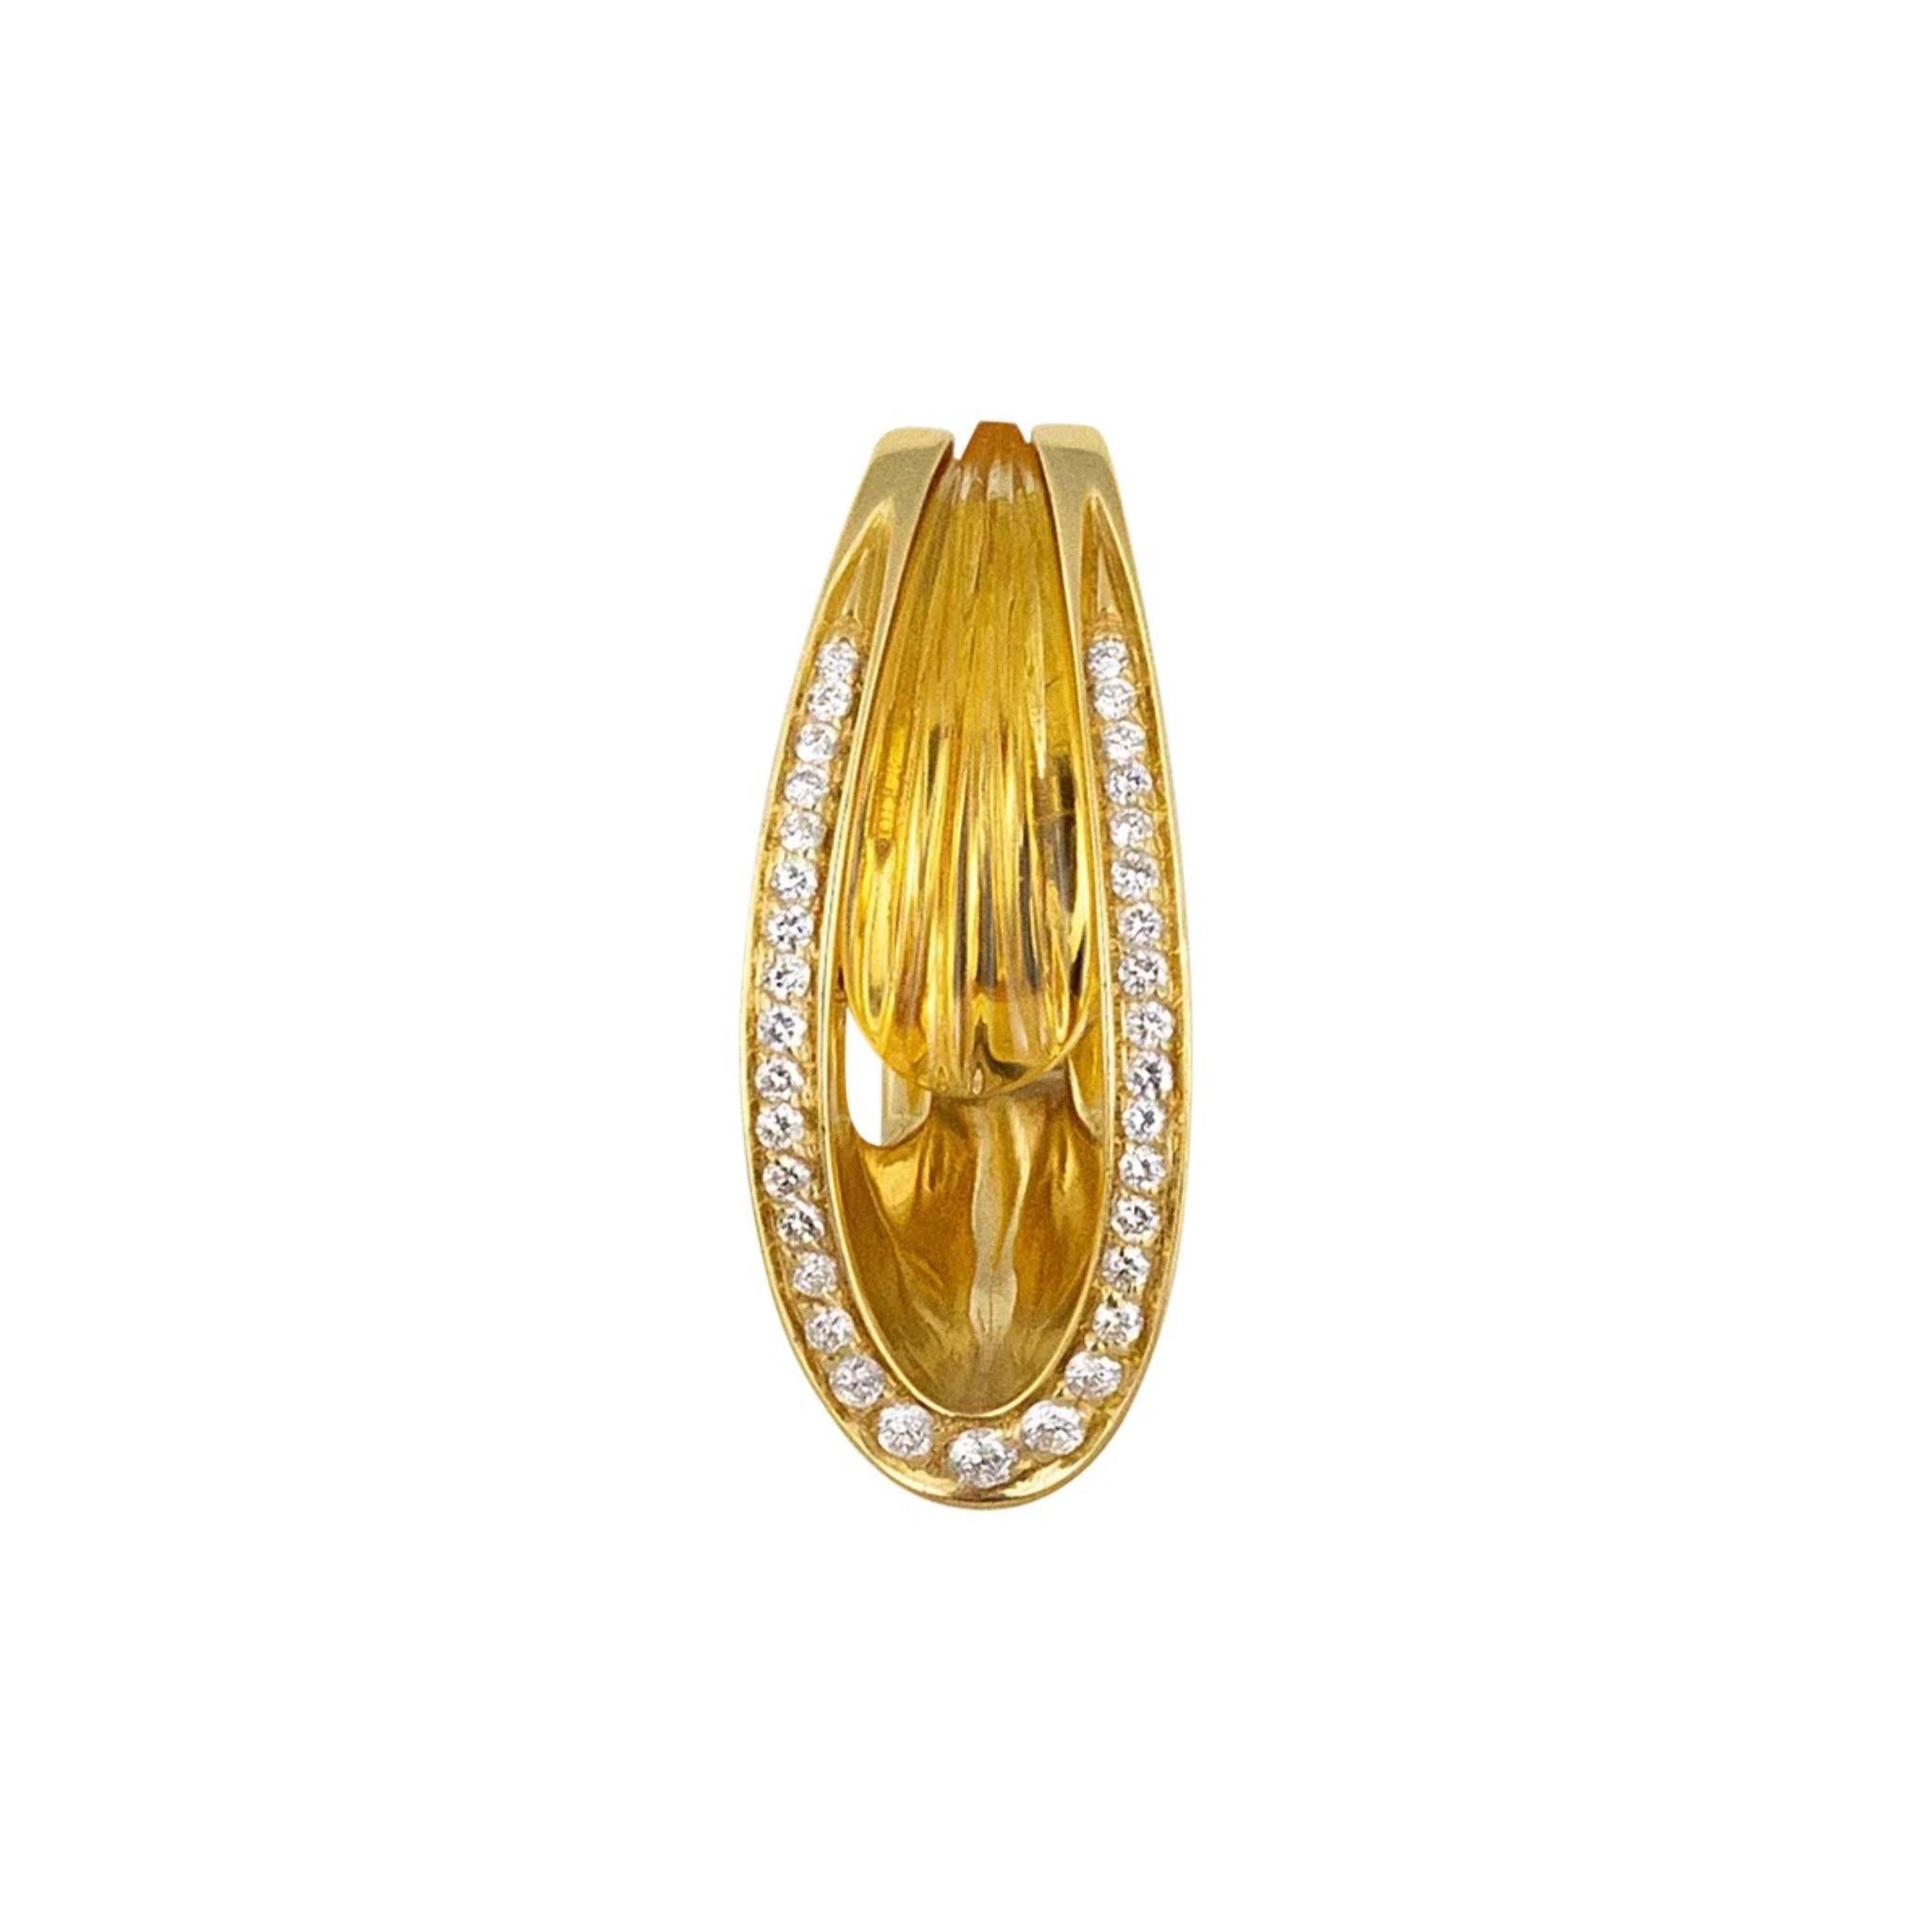 IO SI Boucles d'oreilles en or jaune 18 carats avec diamants et citrine
Diamant : 0,44ctw
Citrine : 1,10ctw
SKU : BLU01901
Prix de détail : 11 495,00